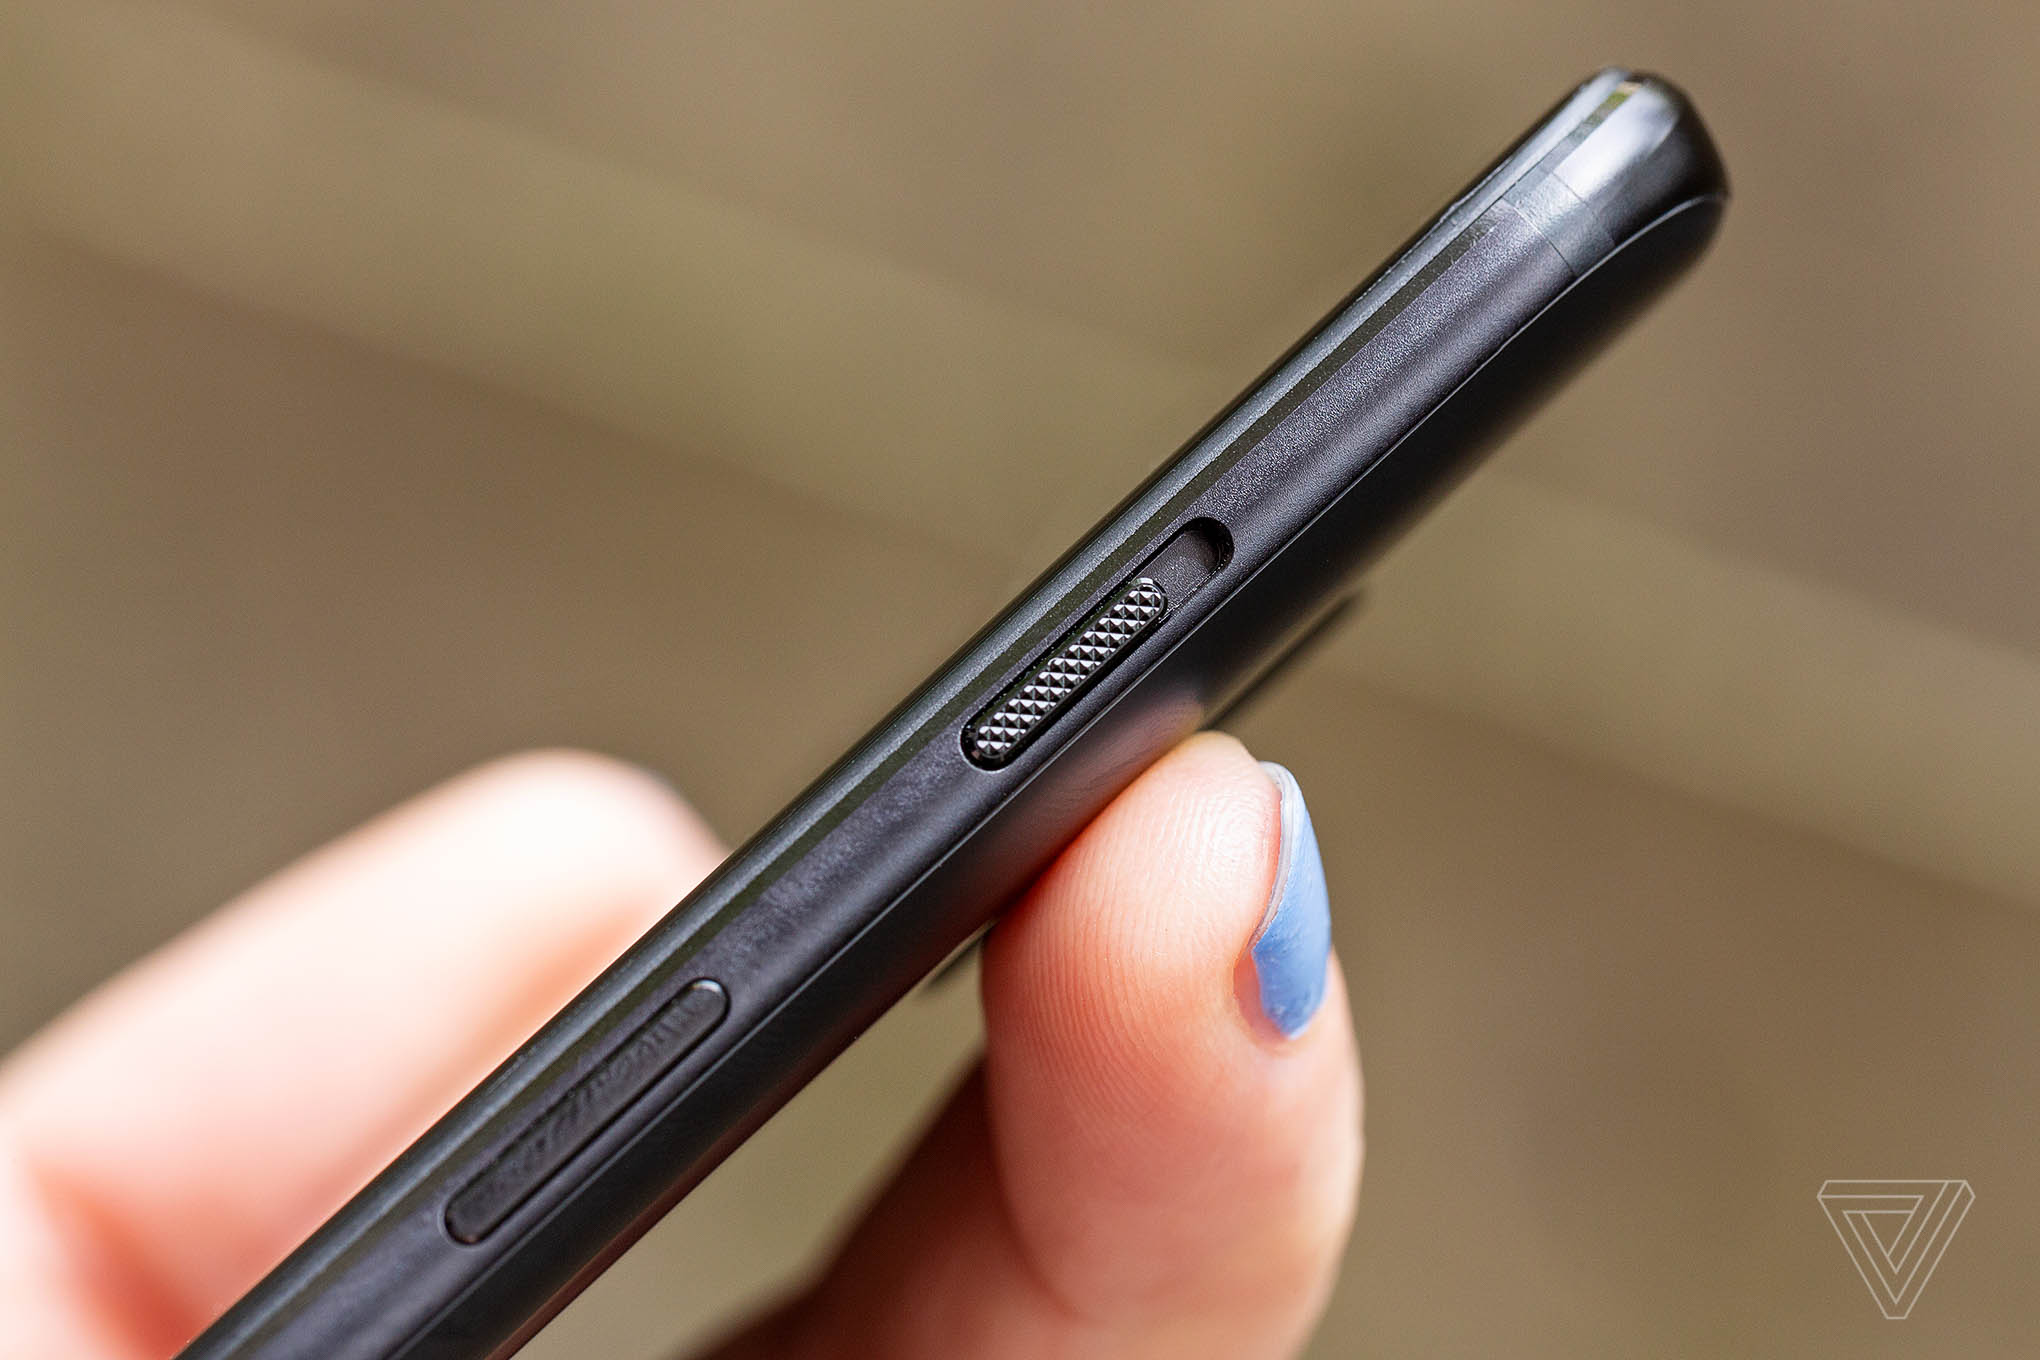 Cận cảnh OnePlus 6: Smartphone màn hình tai
thỏ, vi xử lý Snapdragon 845 giá chỉ 529 USD